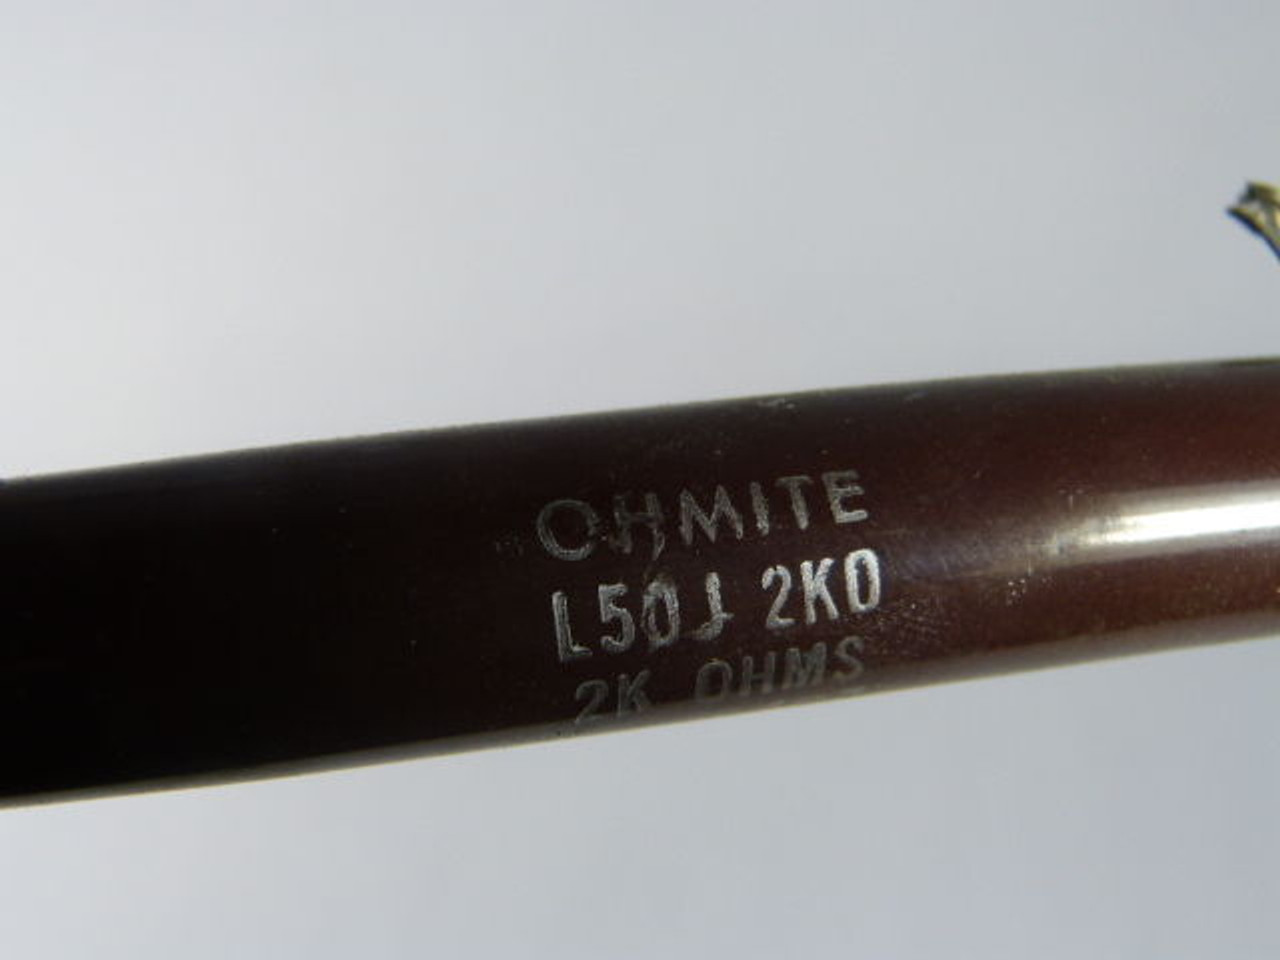 Ohmite L50J2K0 Power Resistor 2Kohm 50W USED